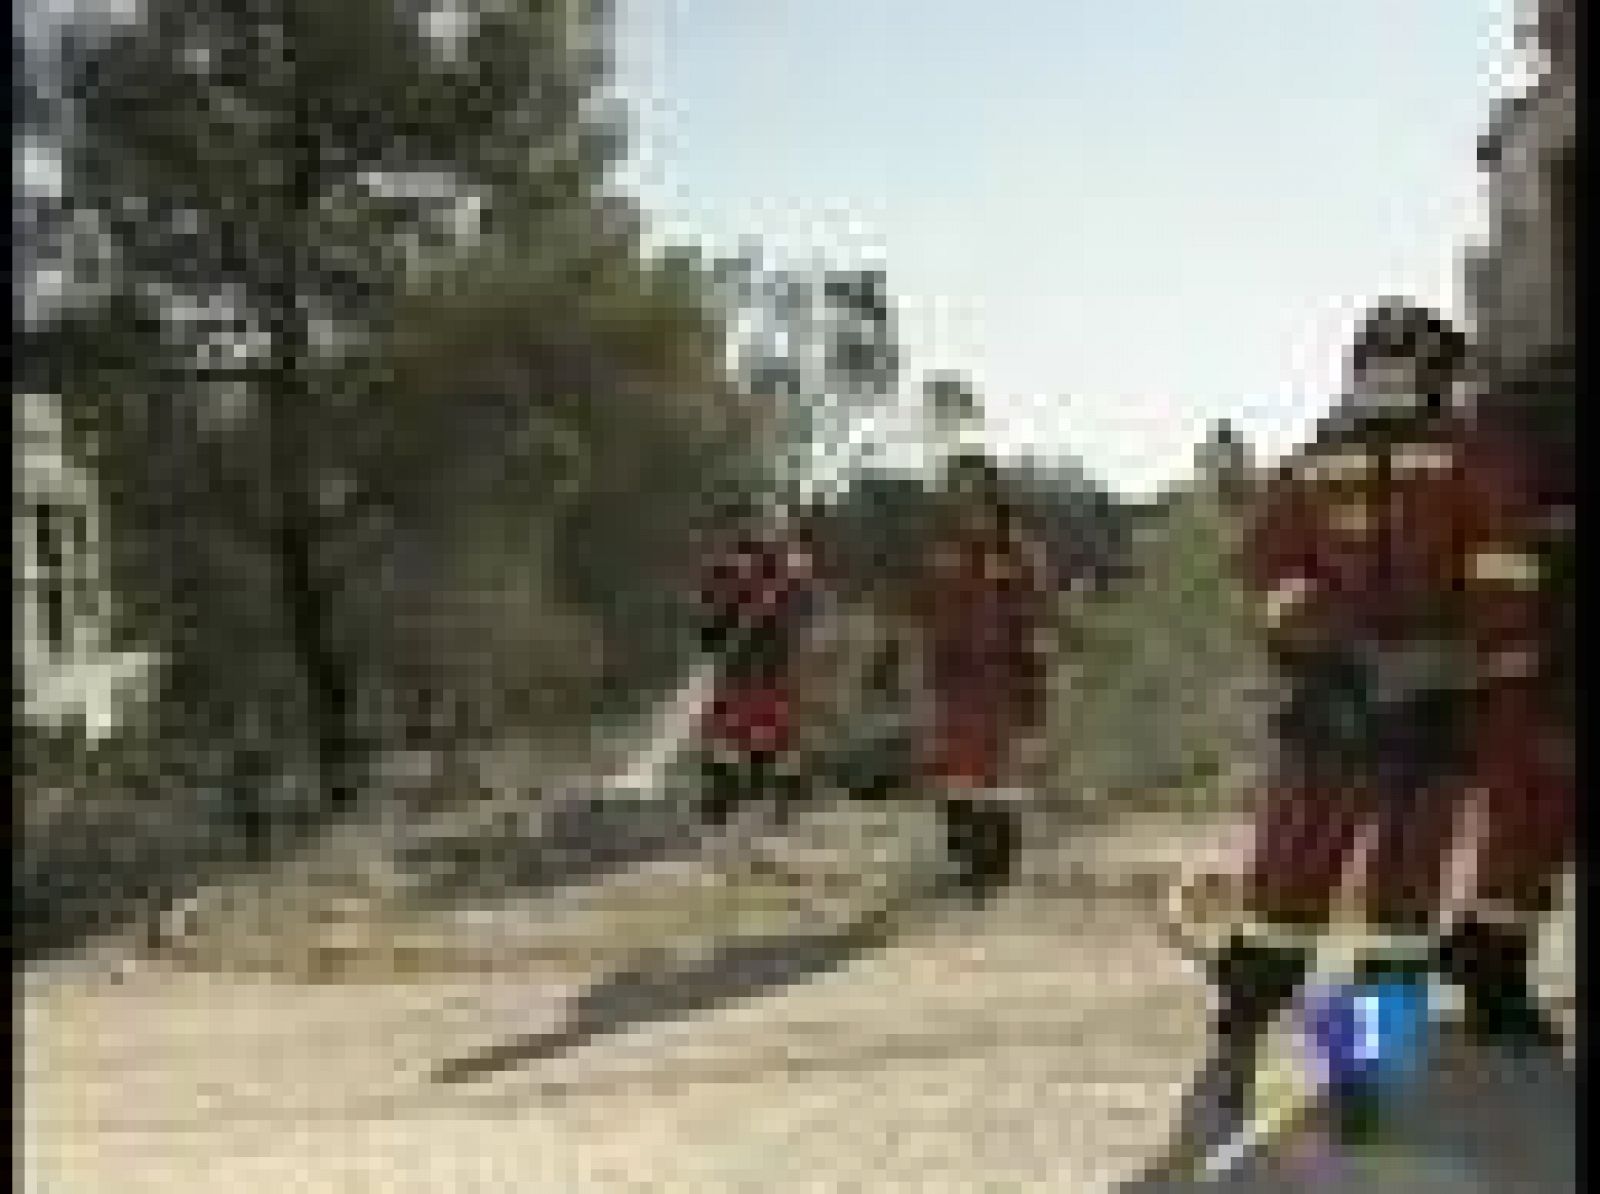 Un proyectil podría haber sido la causa de otro incendio, en el campo militar de Chinchilla, según ha dicho el Delegado de medio ambiente de Albacete.